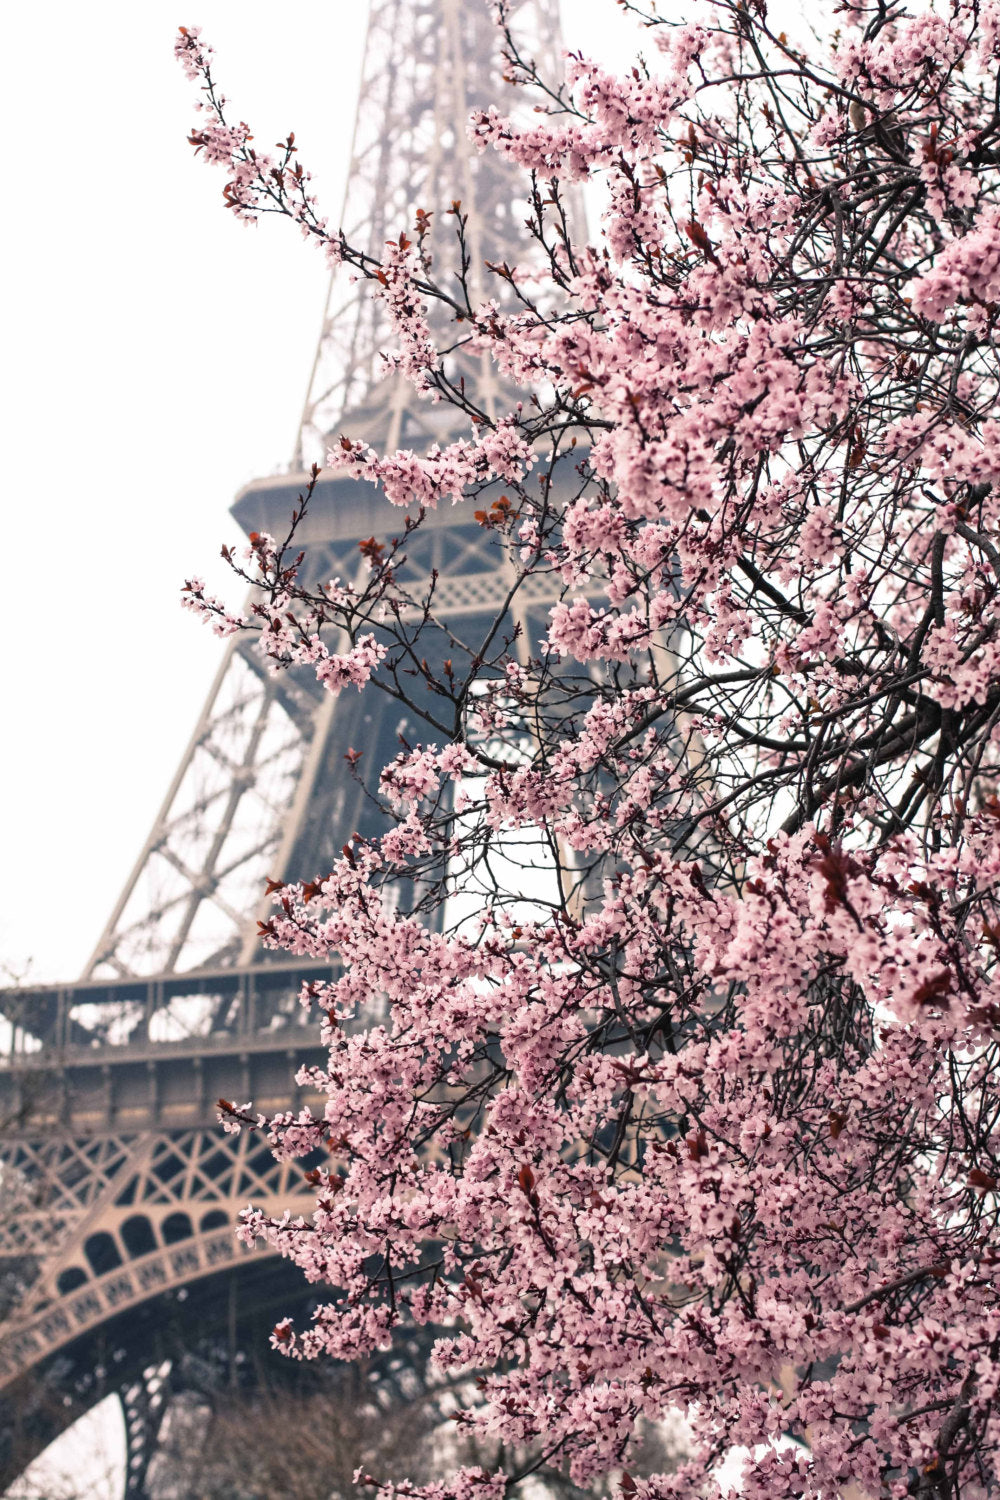 Paris in the Springtime - Every Day Paris 